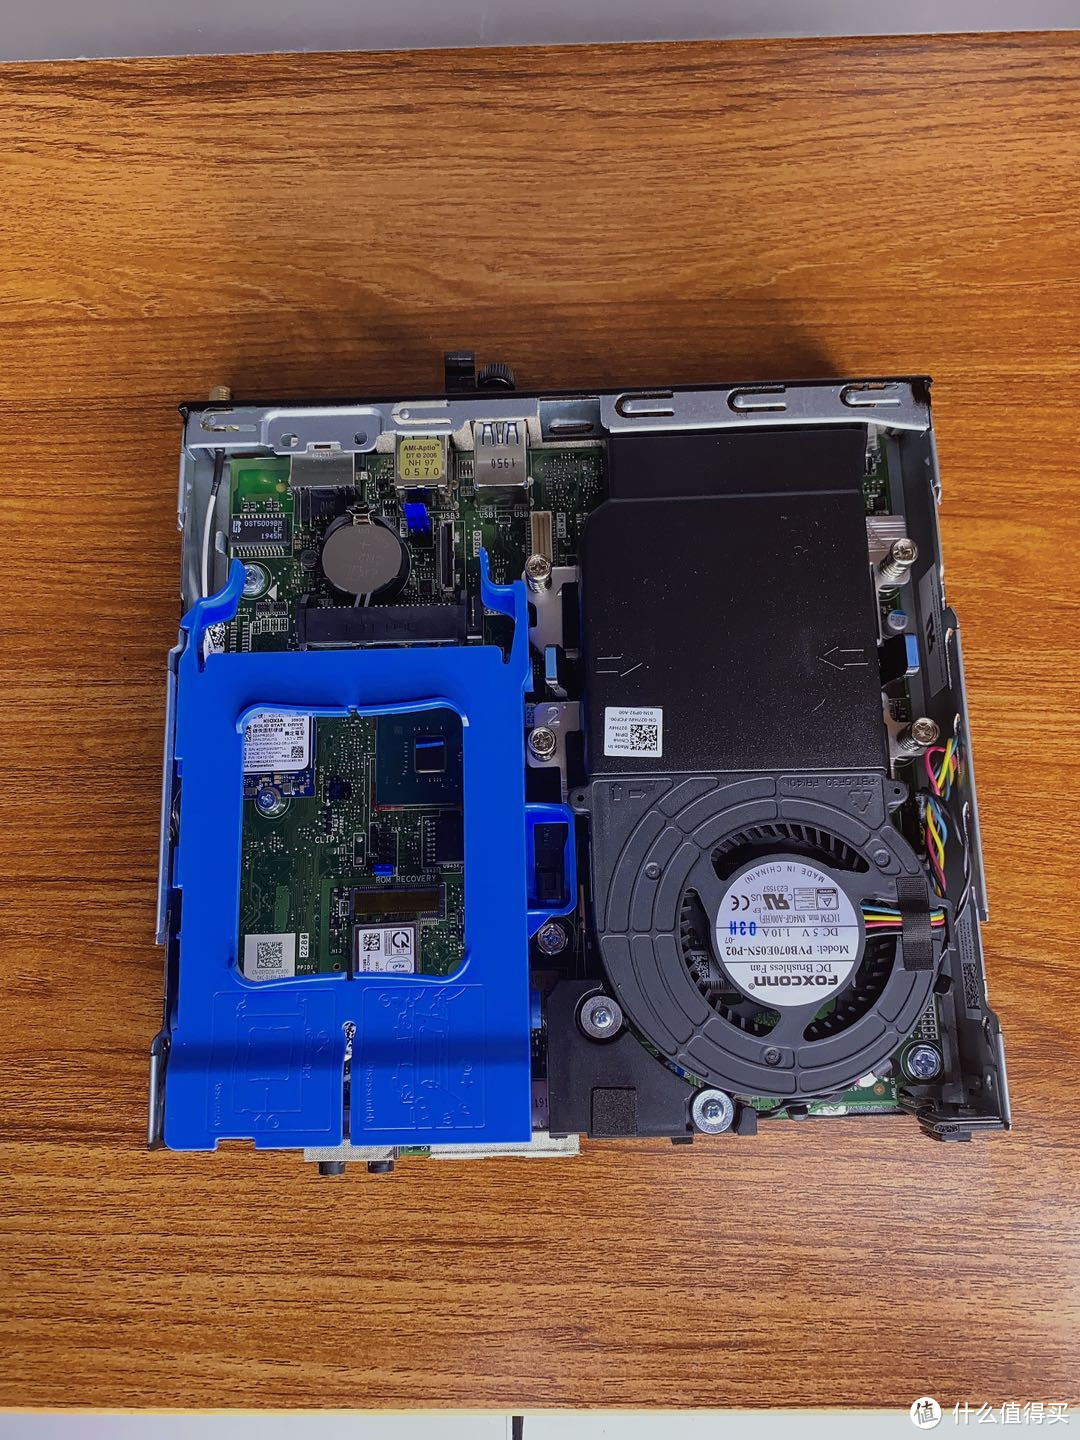 内部很简单，基本全是模块化，简单明了，蓝色架子是空出来的1 个内置 2.5 英寸硬盘，可以直接扩展机械硬盘